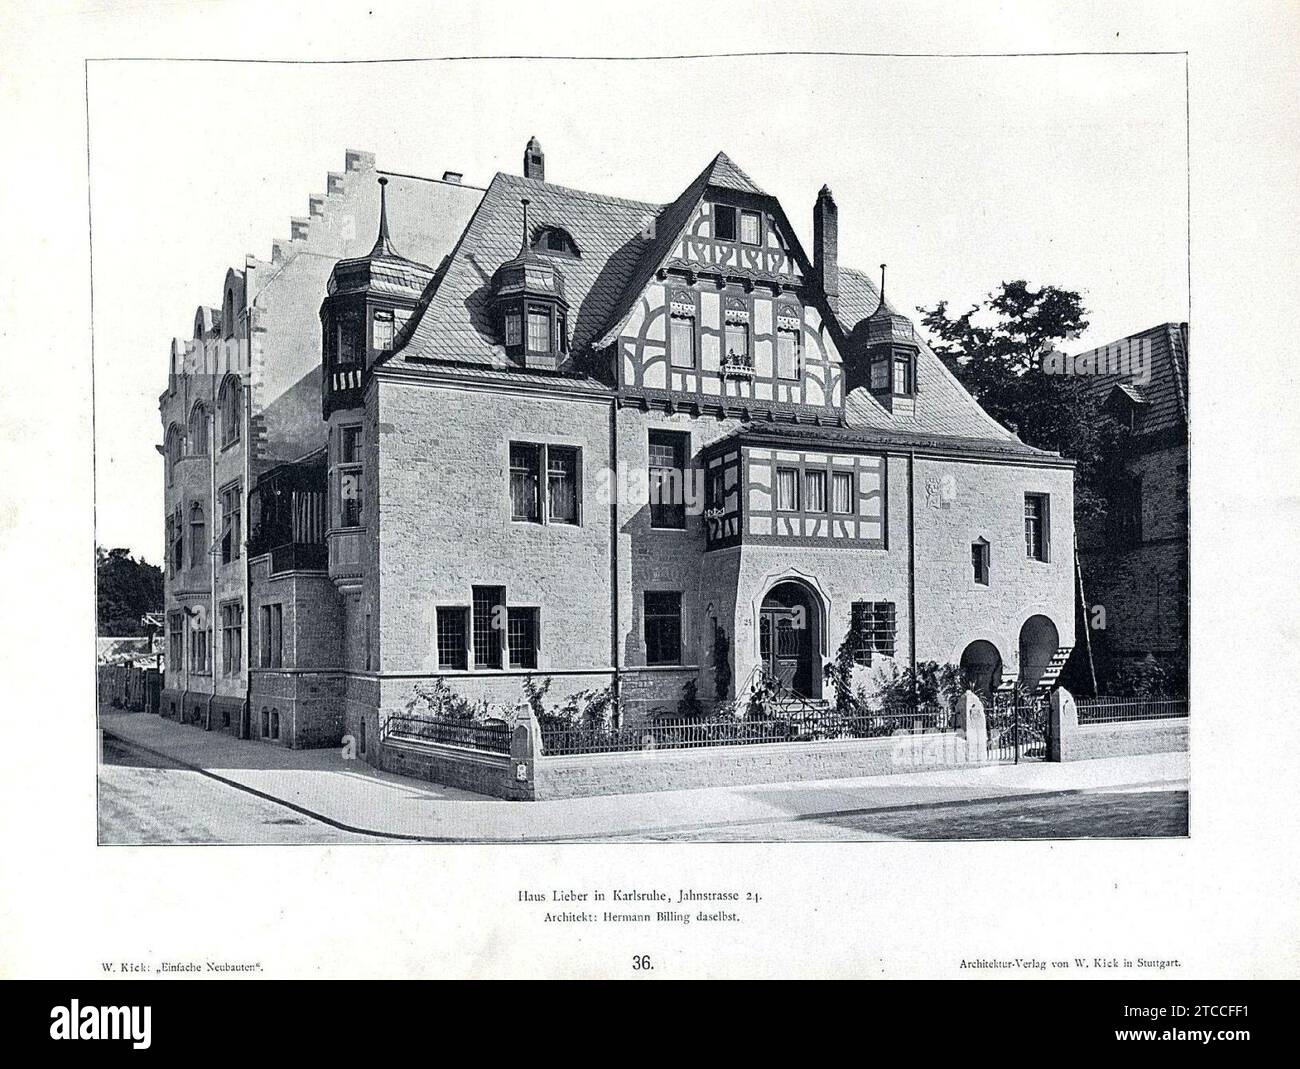 Wilhelm Kick, einfache Neubauten, Stuttgart 1890, Haus lieber in Karlsruhe, Jahnstraße 24, Architekt Hermann Billing aus Karlsruhe. Stockfoto